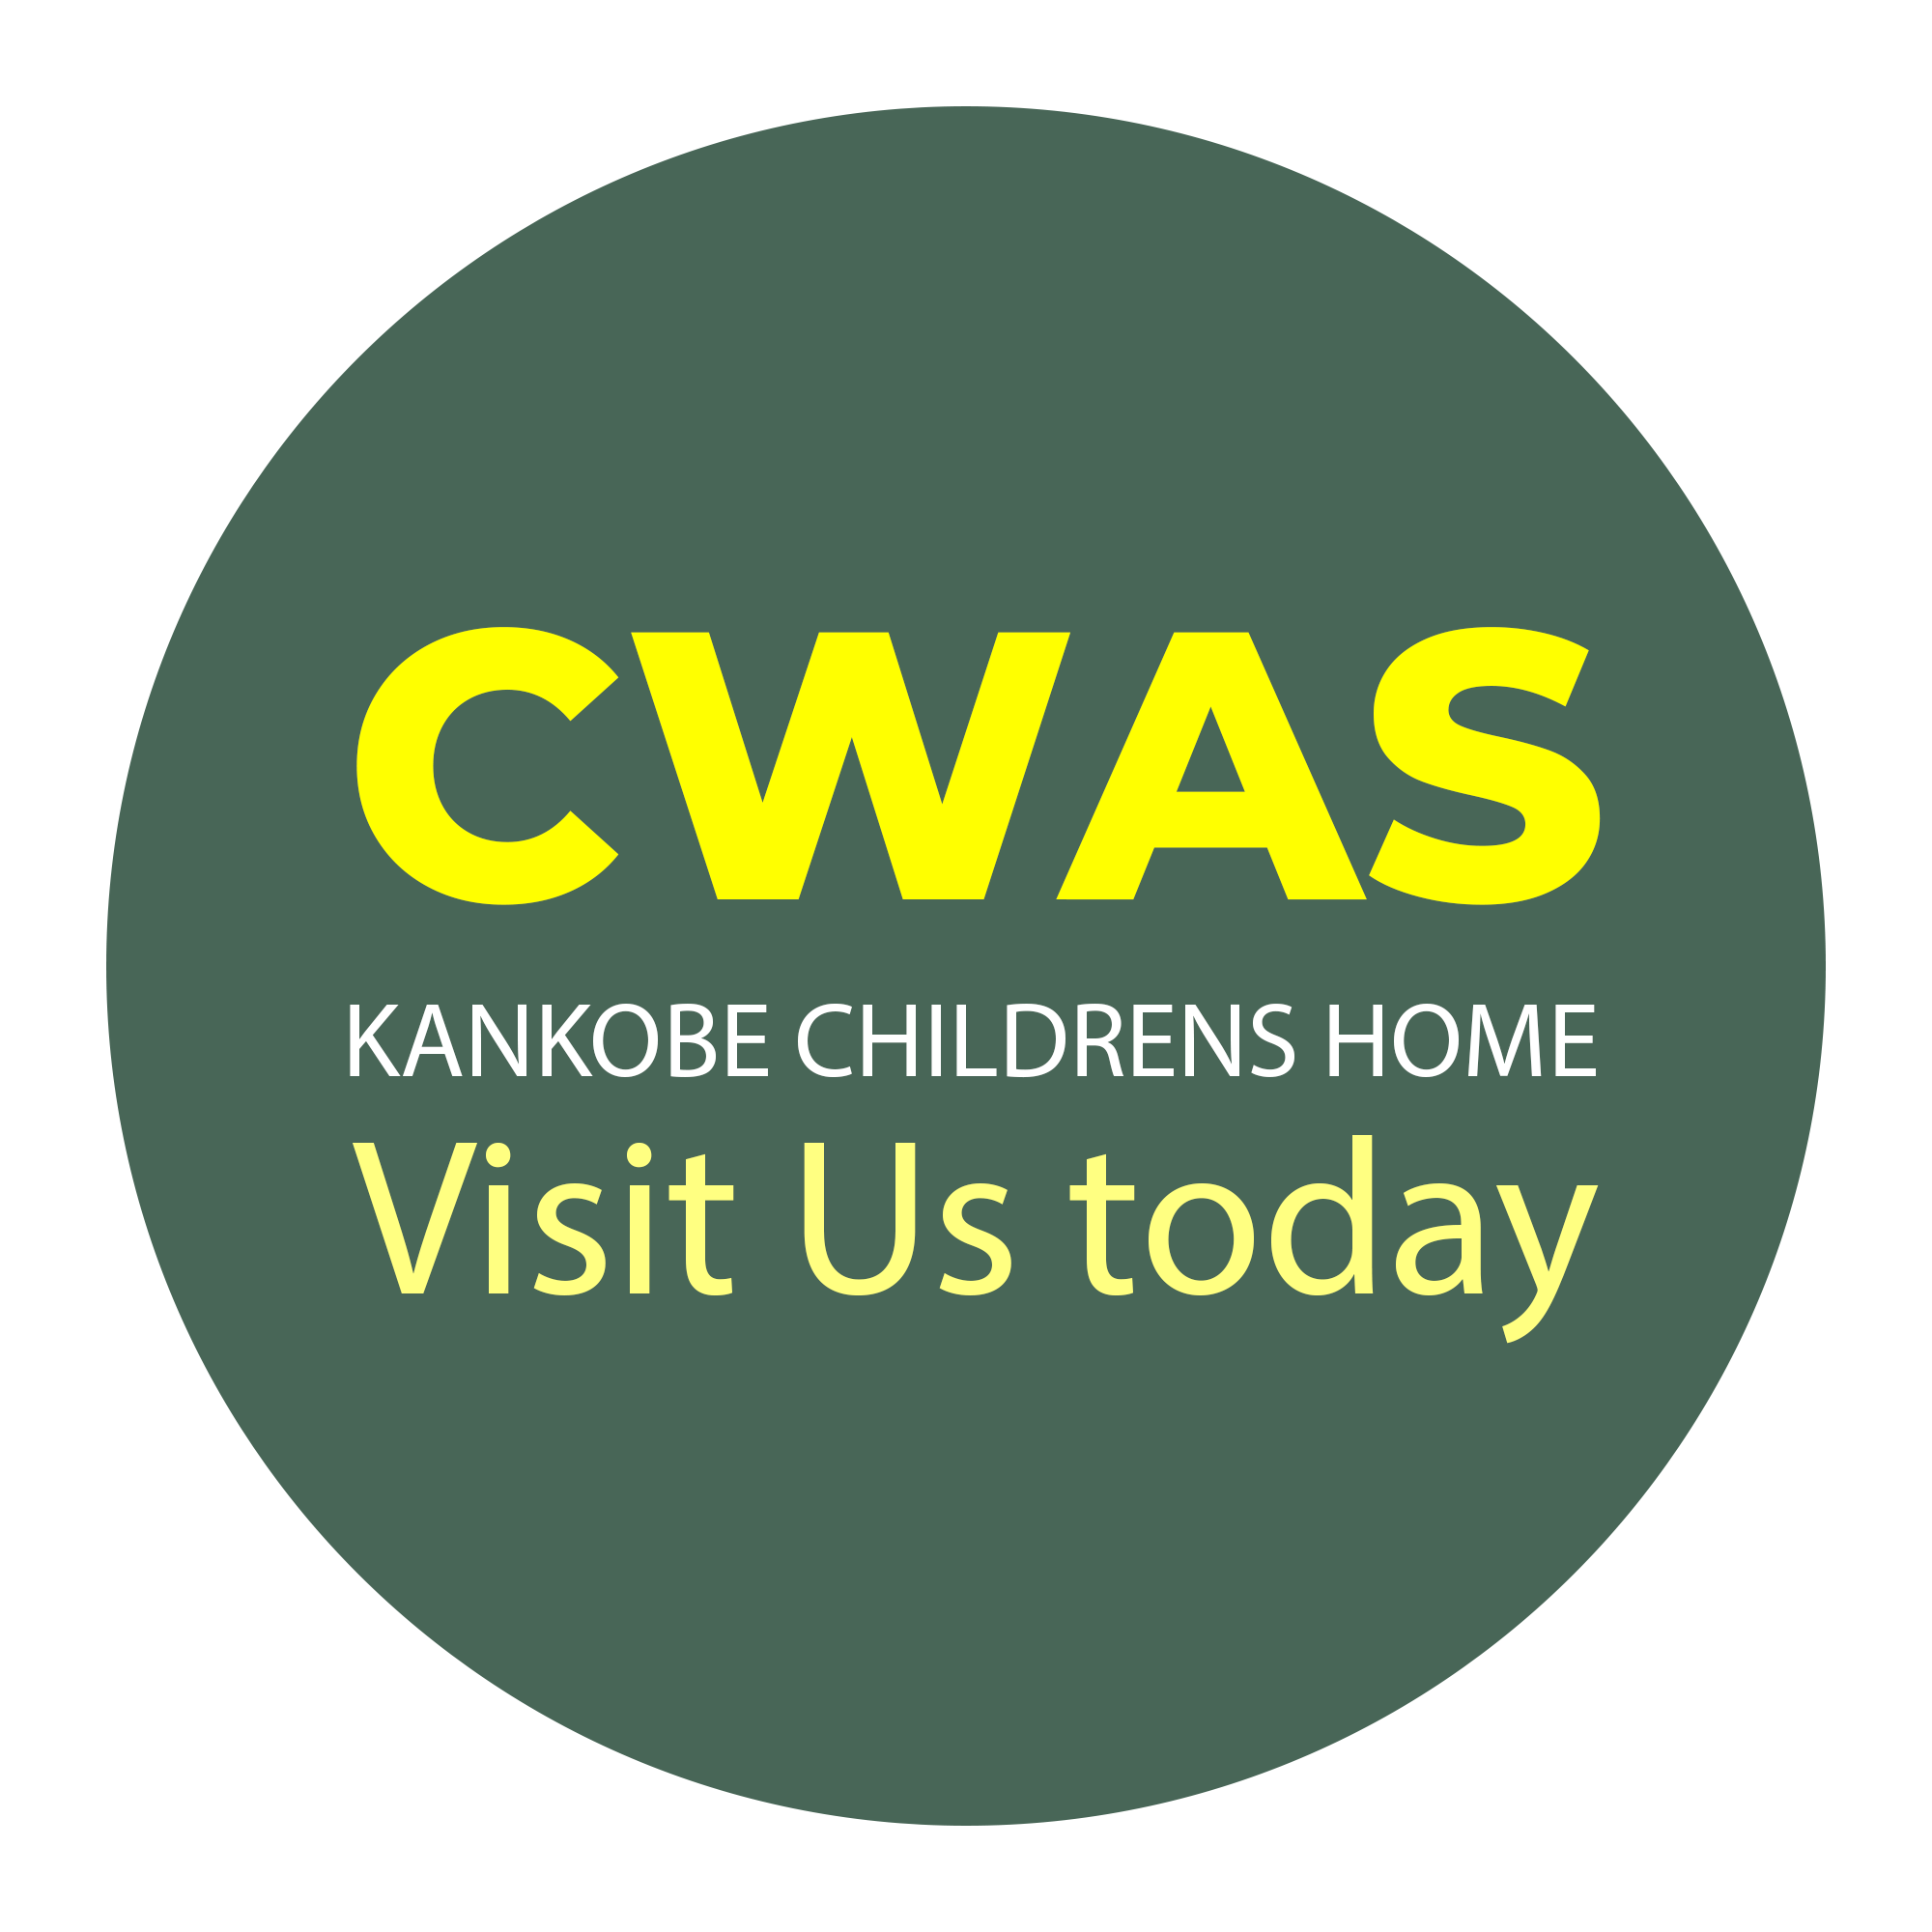 CWAS Kankobe Childrens Home